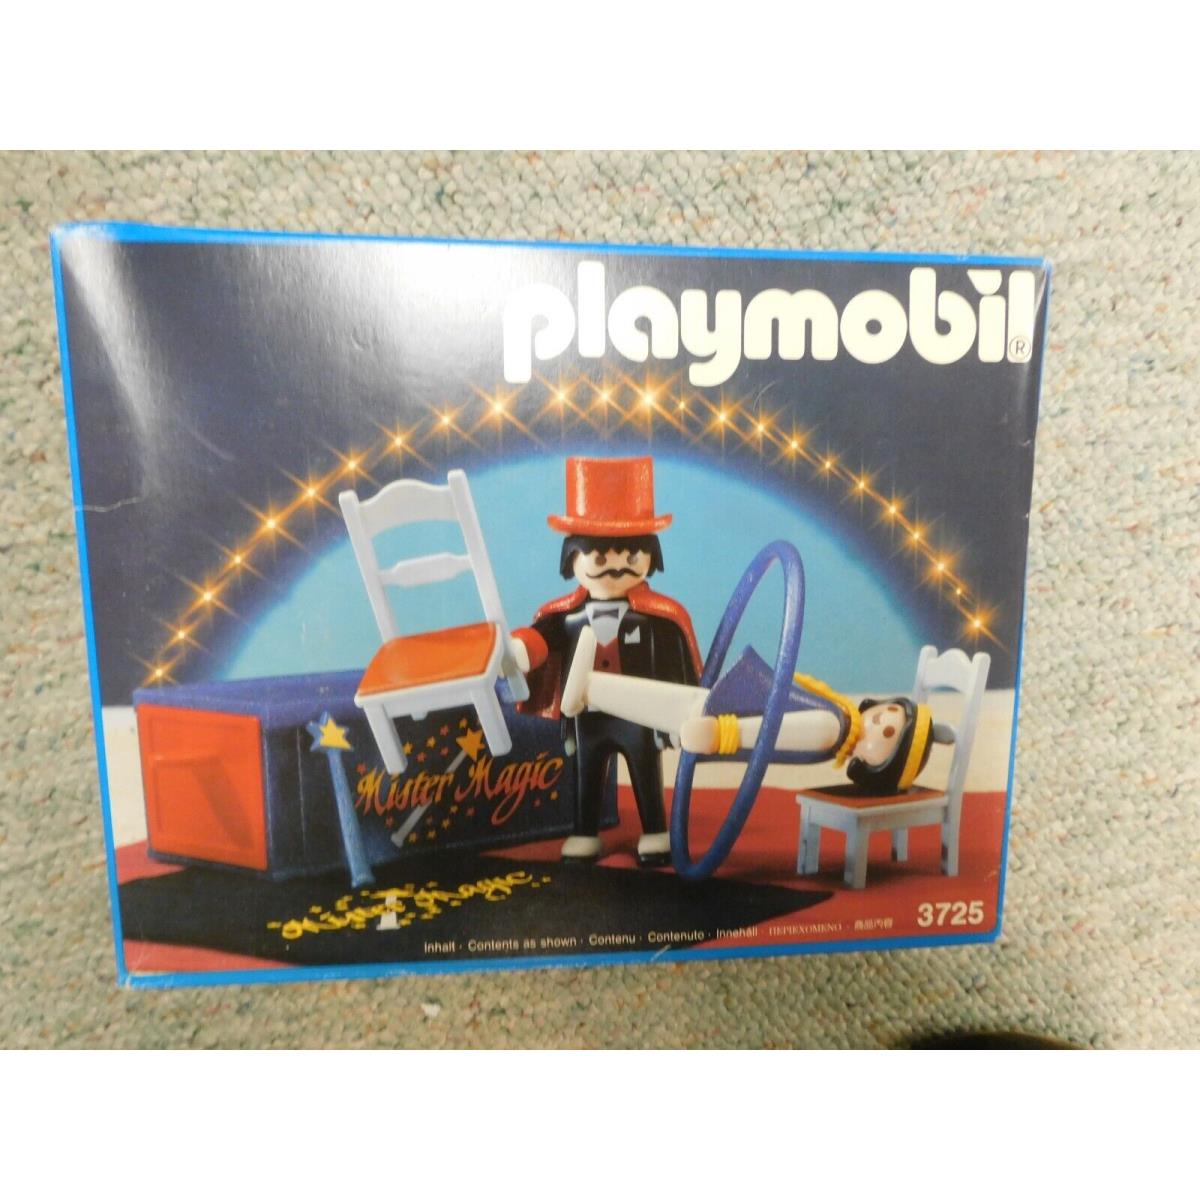 Playmobil Set 3725 Magician and Lady Circus Romani